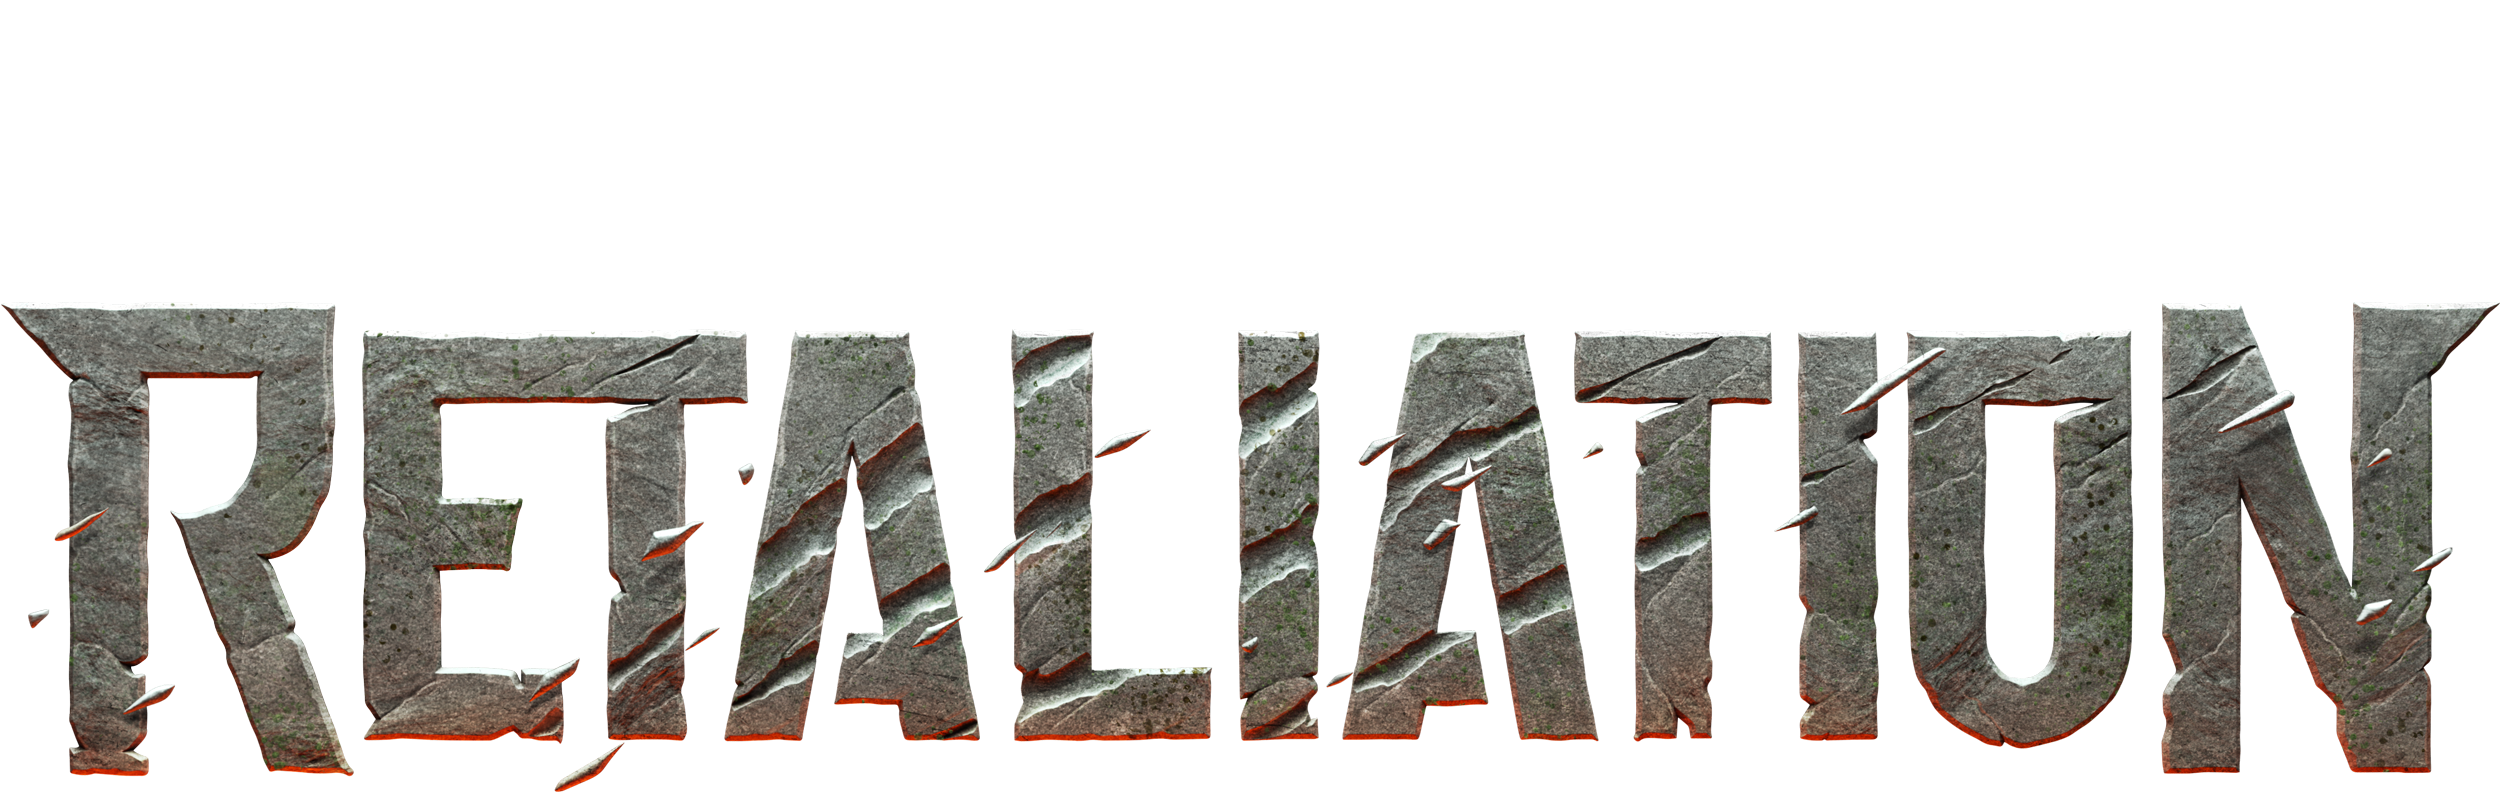 Werewolf-retaliation-final